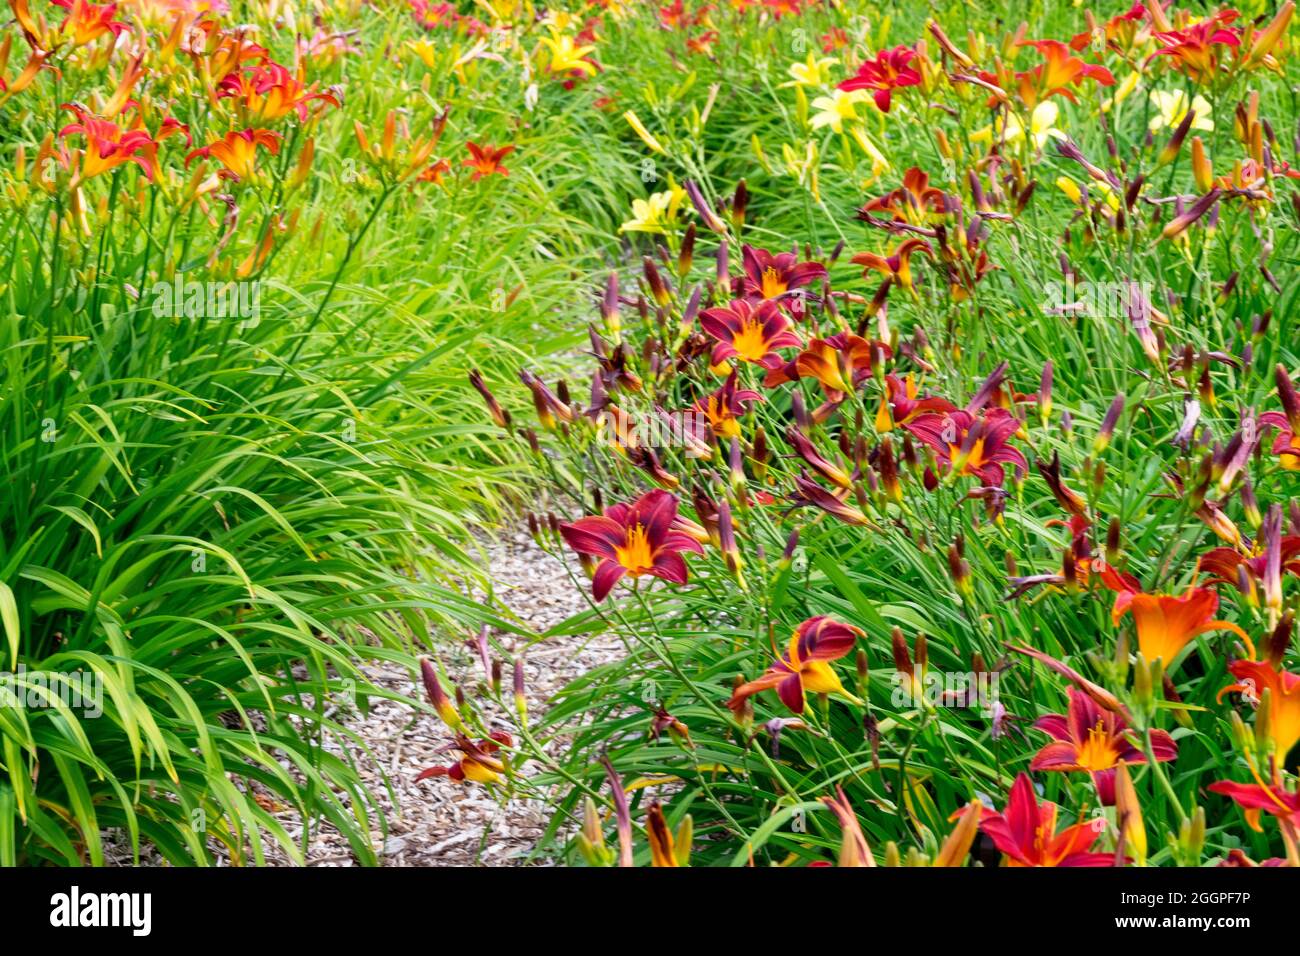 Hemerocallis, Garden of daylilies combination Stock Photo